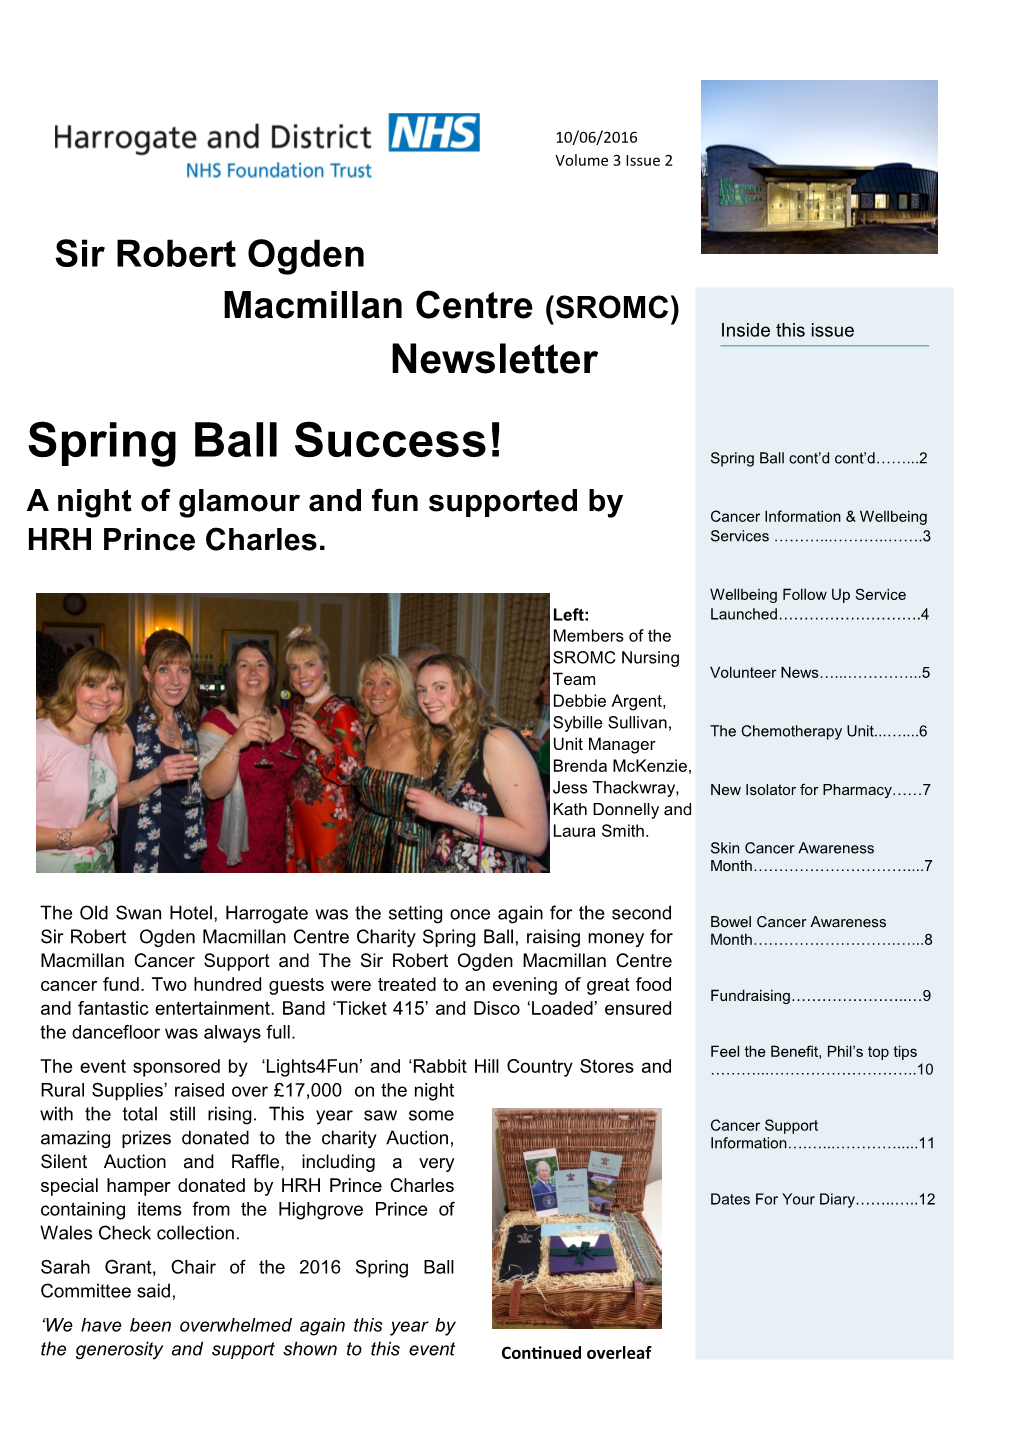 Sir Robert Ogden Macmillan Centre (SROMC) Inside This Issue Newsletter